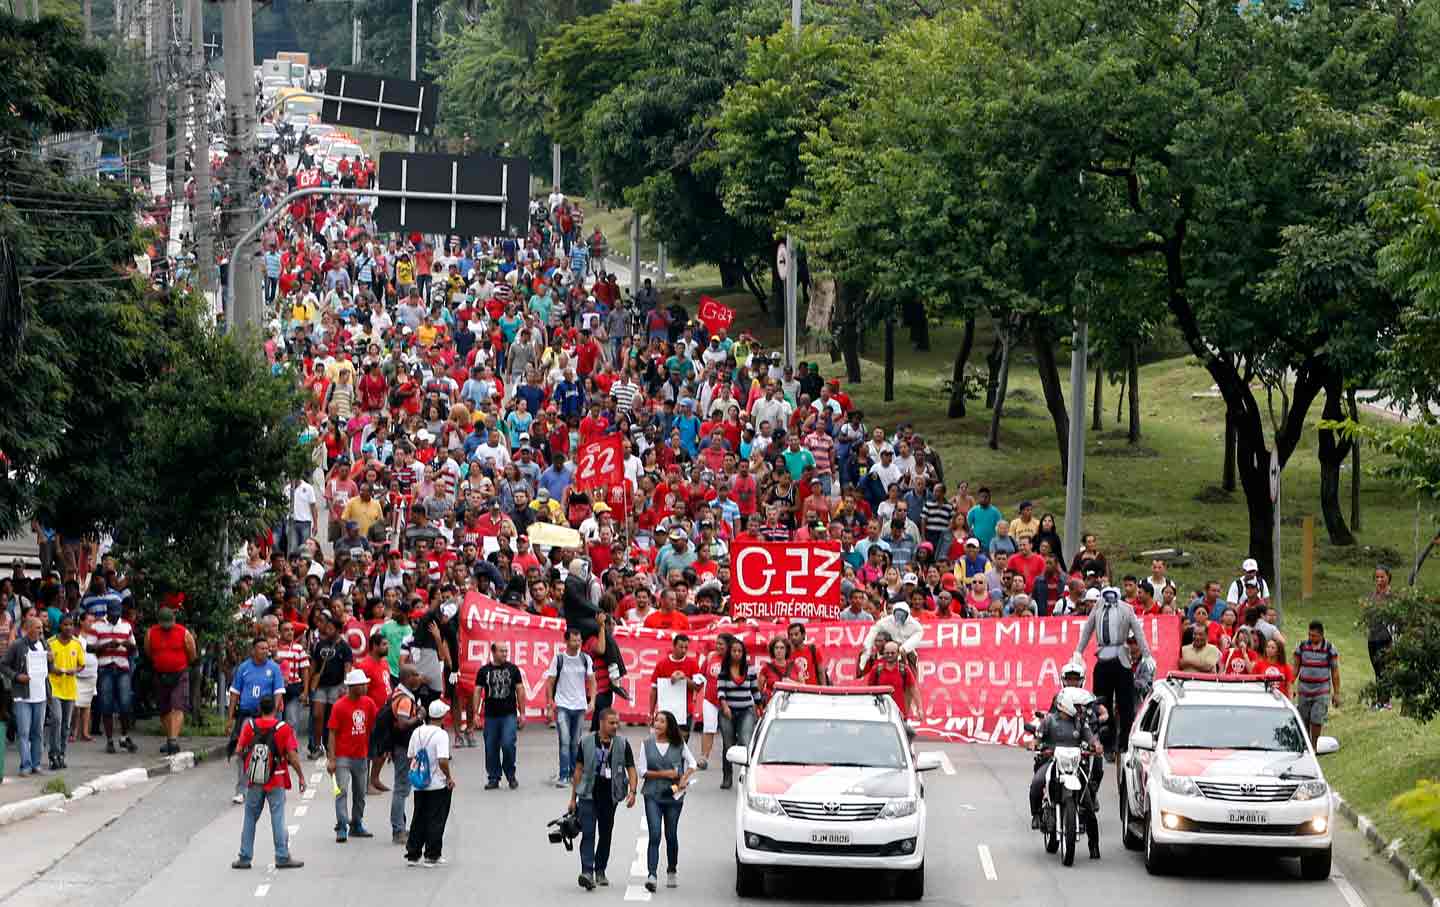 Brazil MTST march